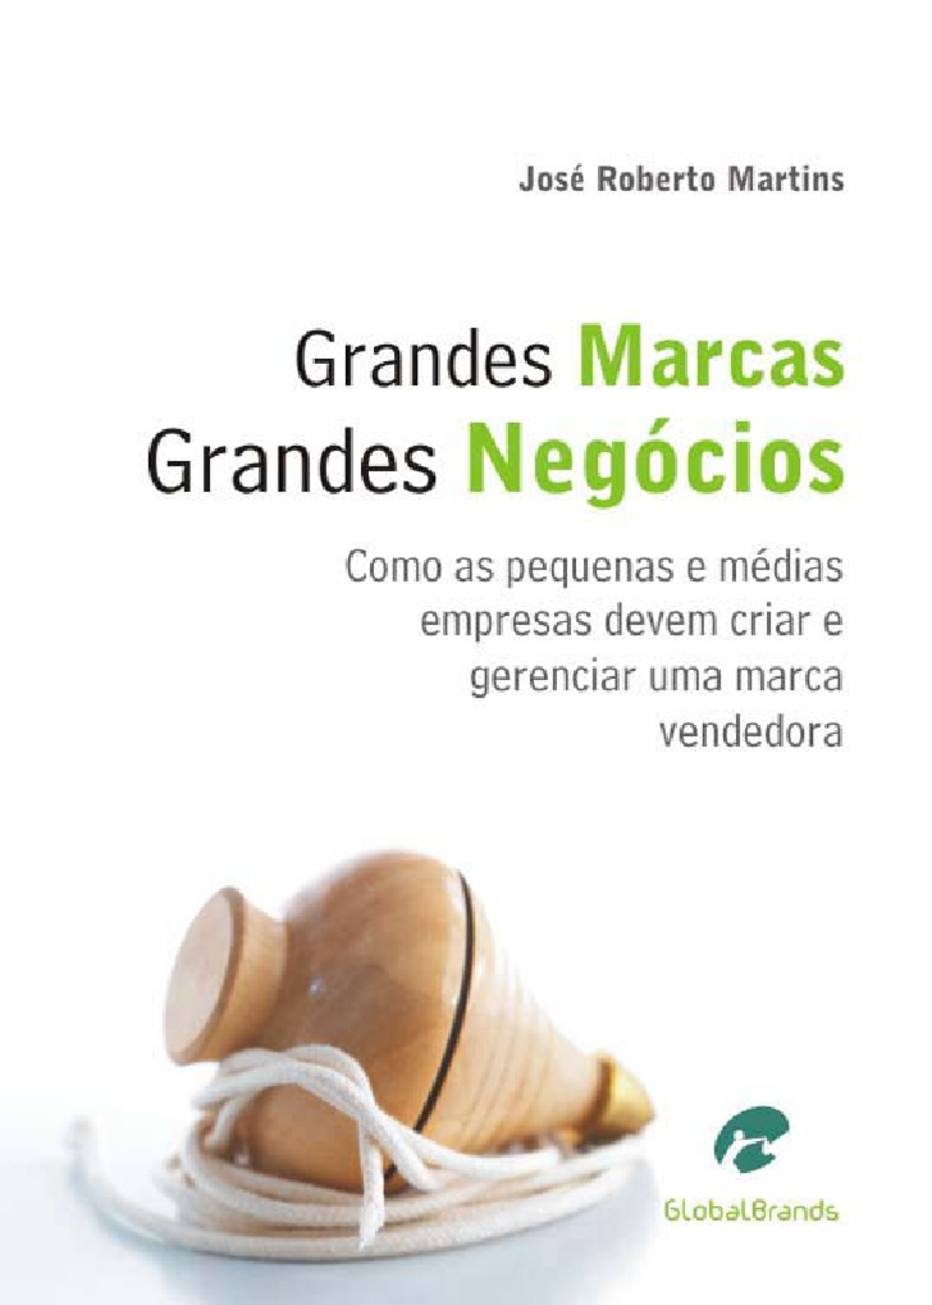 Grandes marcas Grandes negócios - Como as pequenas e médias empresas devem criar e gerenciar uma marca vencedora. Livro de José Roberto Martins.Acesse <a href='http://globalbrands.com.br/livros/grandes-marcas-grandes-negocios/' target='_blank'>aqui.</a>